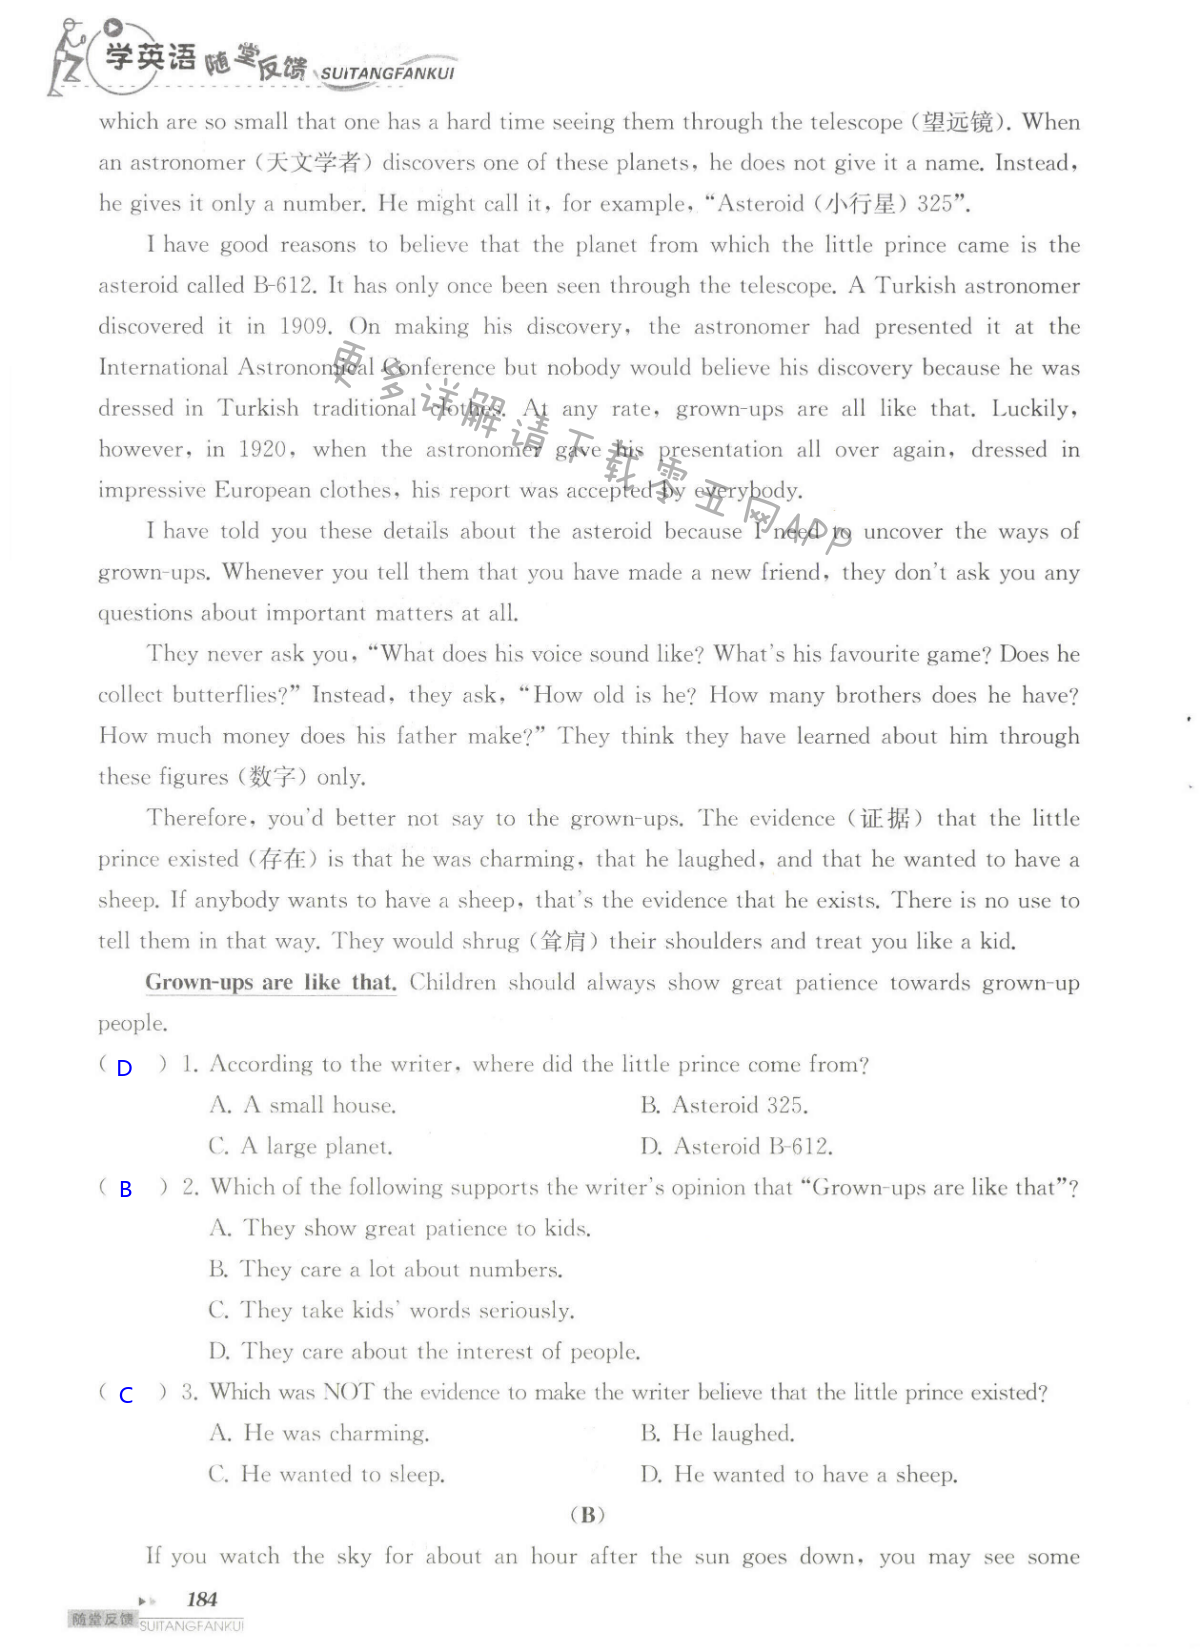 单元综合测试卷 Test for Unit 4 of 9B - 第184页